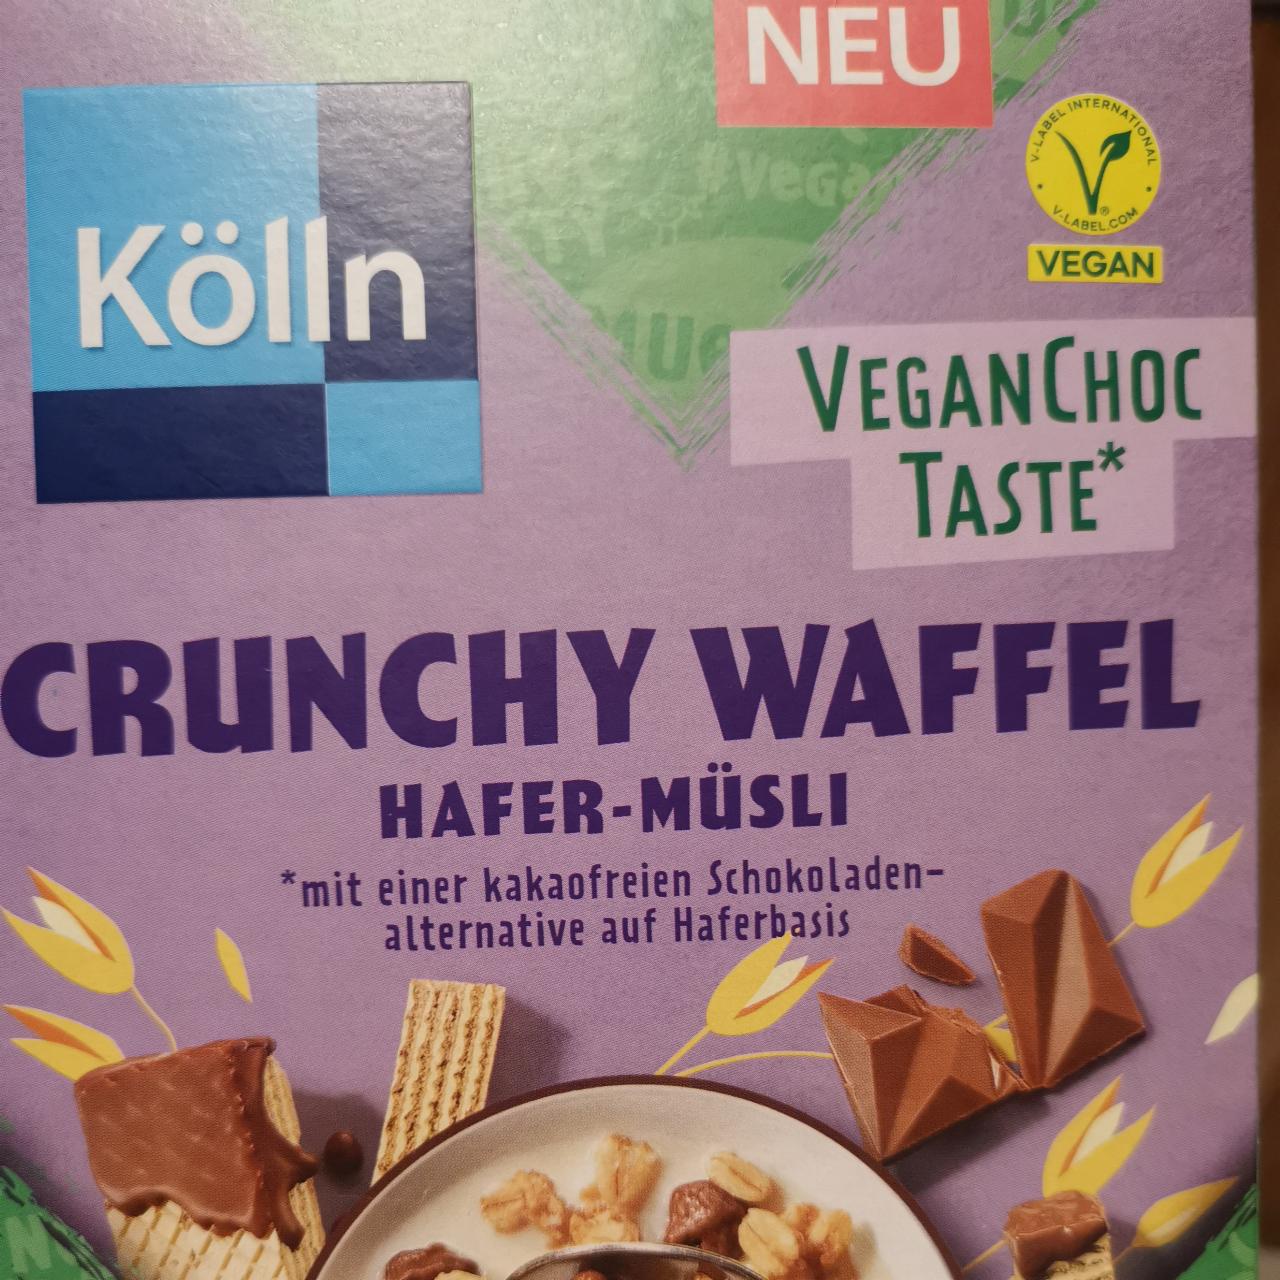 Fotografie - Crunchy Waffel Hafer-Müsli vegan choc taste Kölln